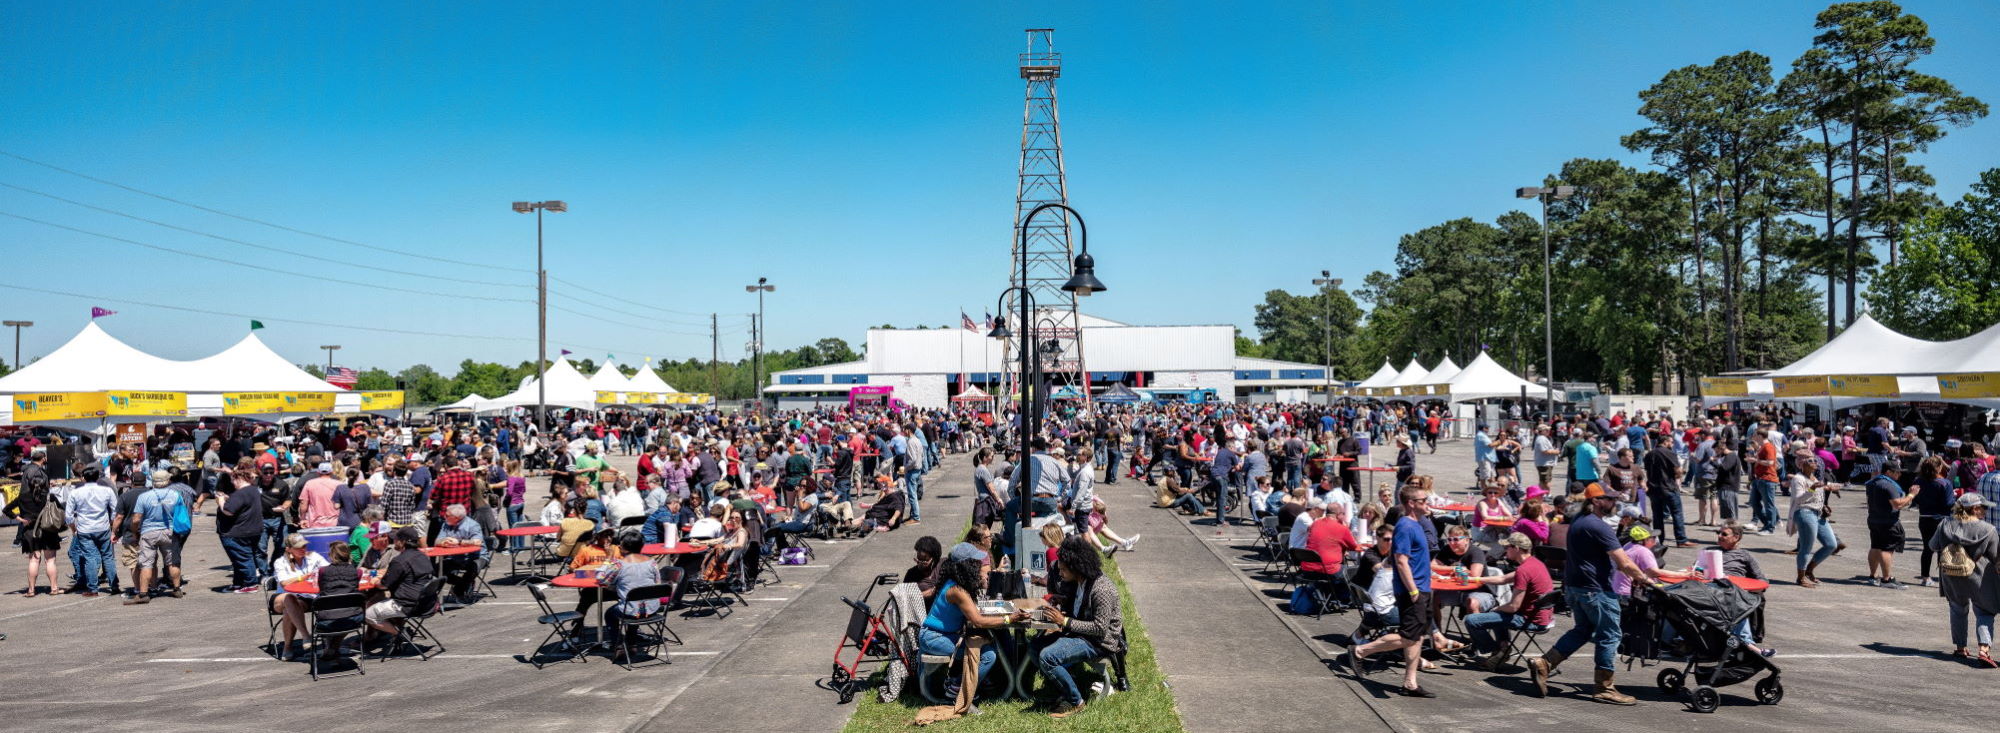 2019 Houston Barbecue Festival